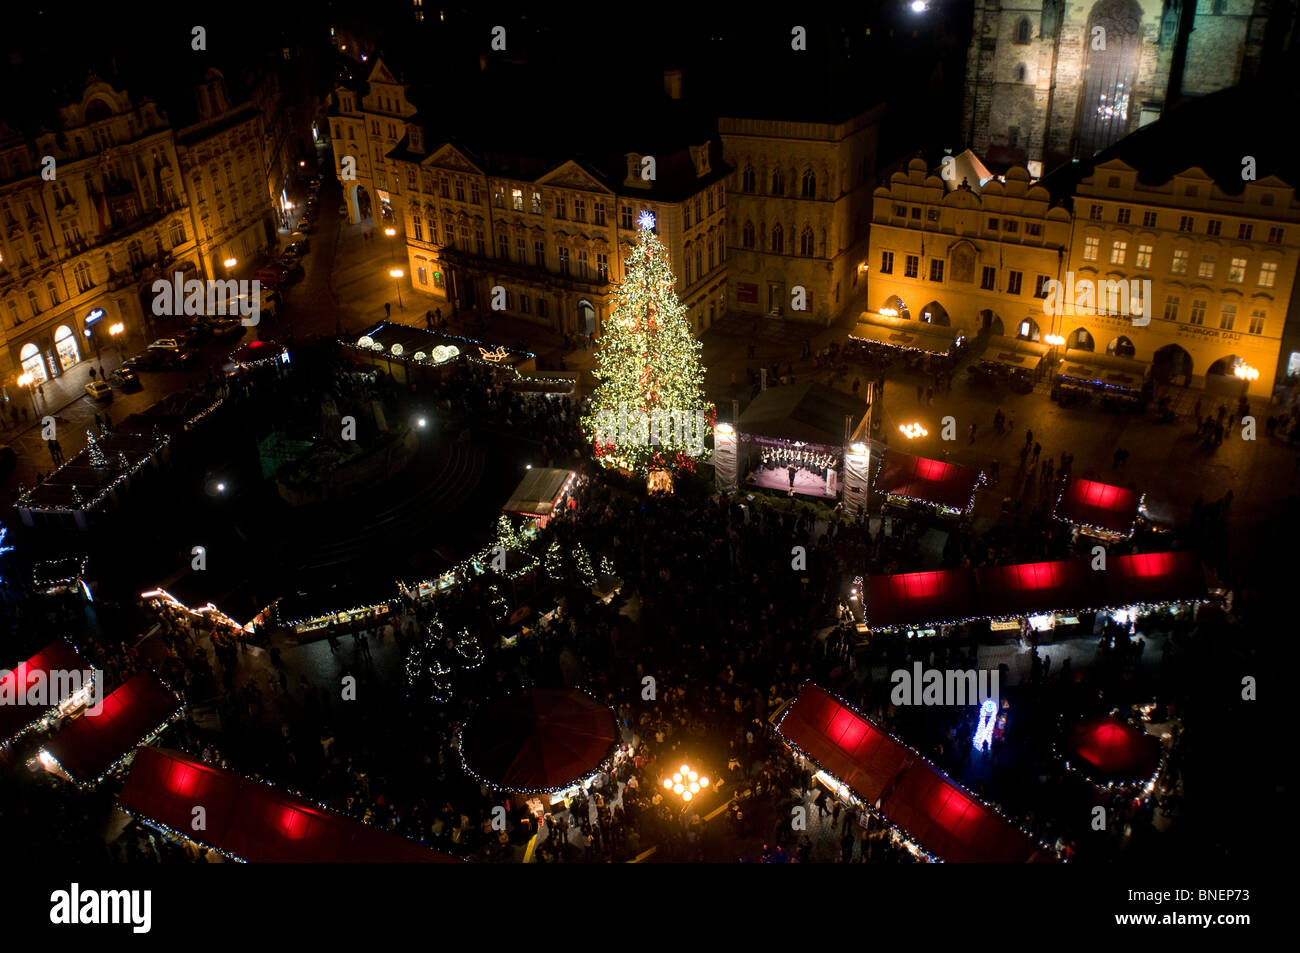 El mercado de Navidad en la plaza de la ciudad vieja, Stare Mesto. Praga REPÚBLICA CHECA Foto de stock